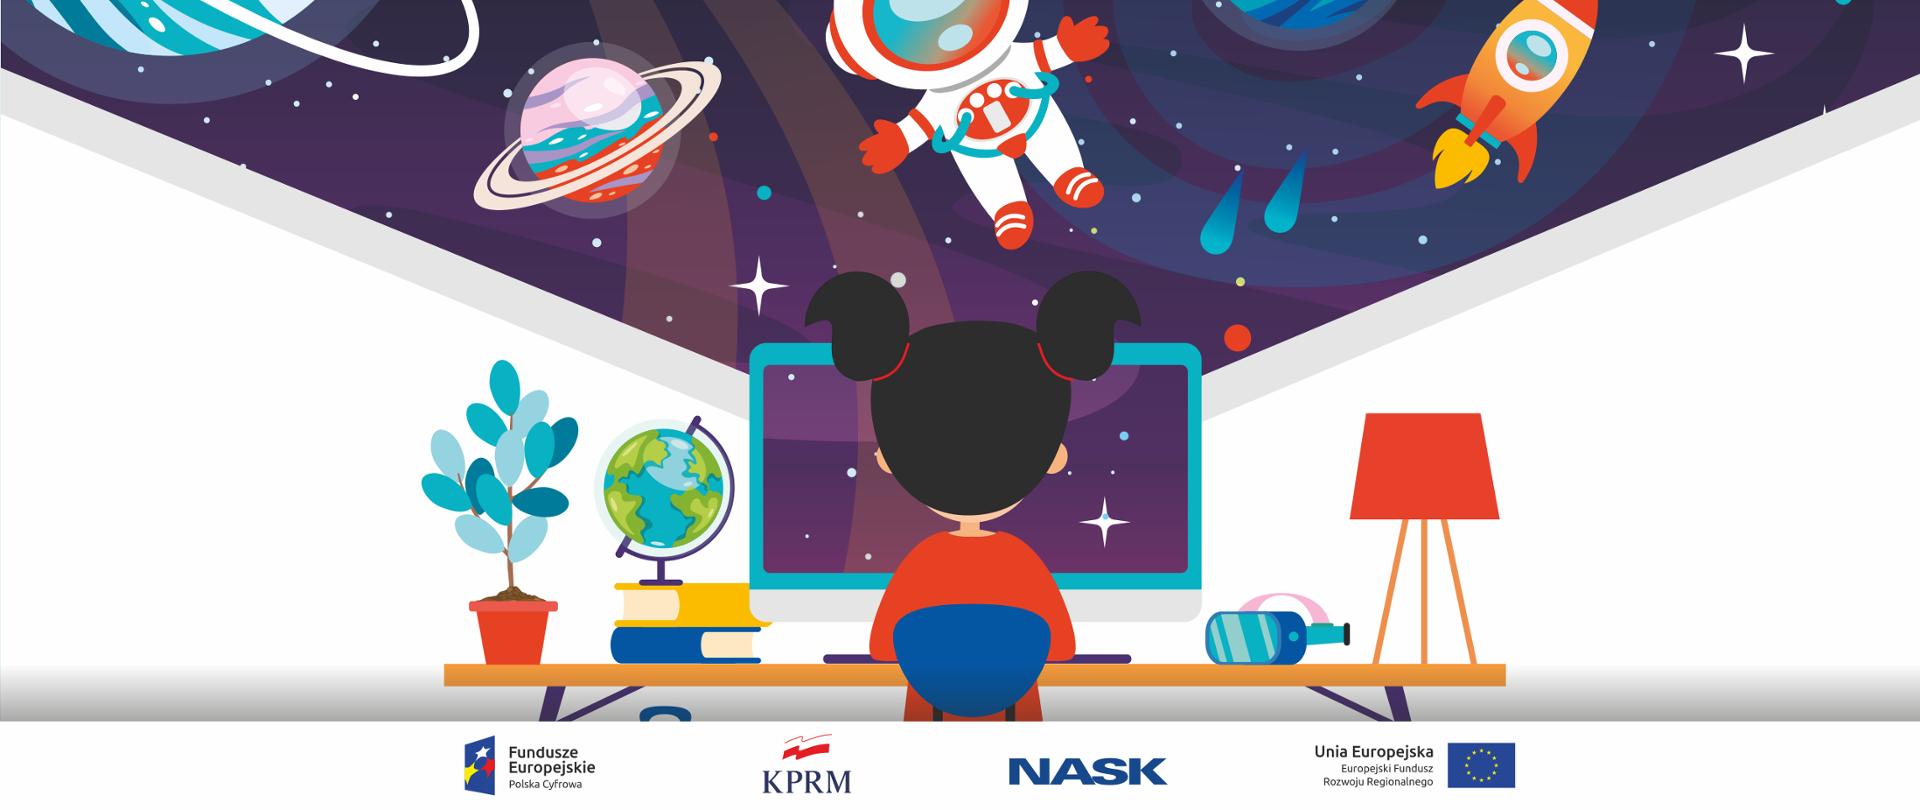 Kolorowa grafika wektorowa, ujęcie od tyłu - dziewczyna siedząca za biurkiem, przed komputerem, nad nią rozgwieżdżone niebo, na którym widać m.in. planety, kosmonautę i rakietę.